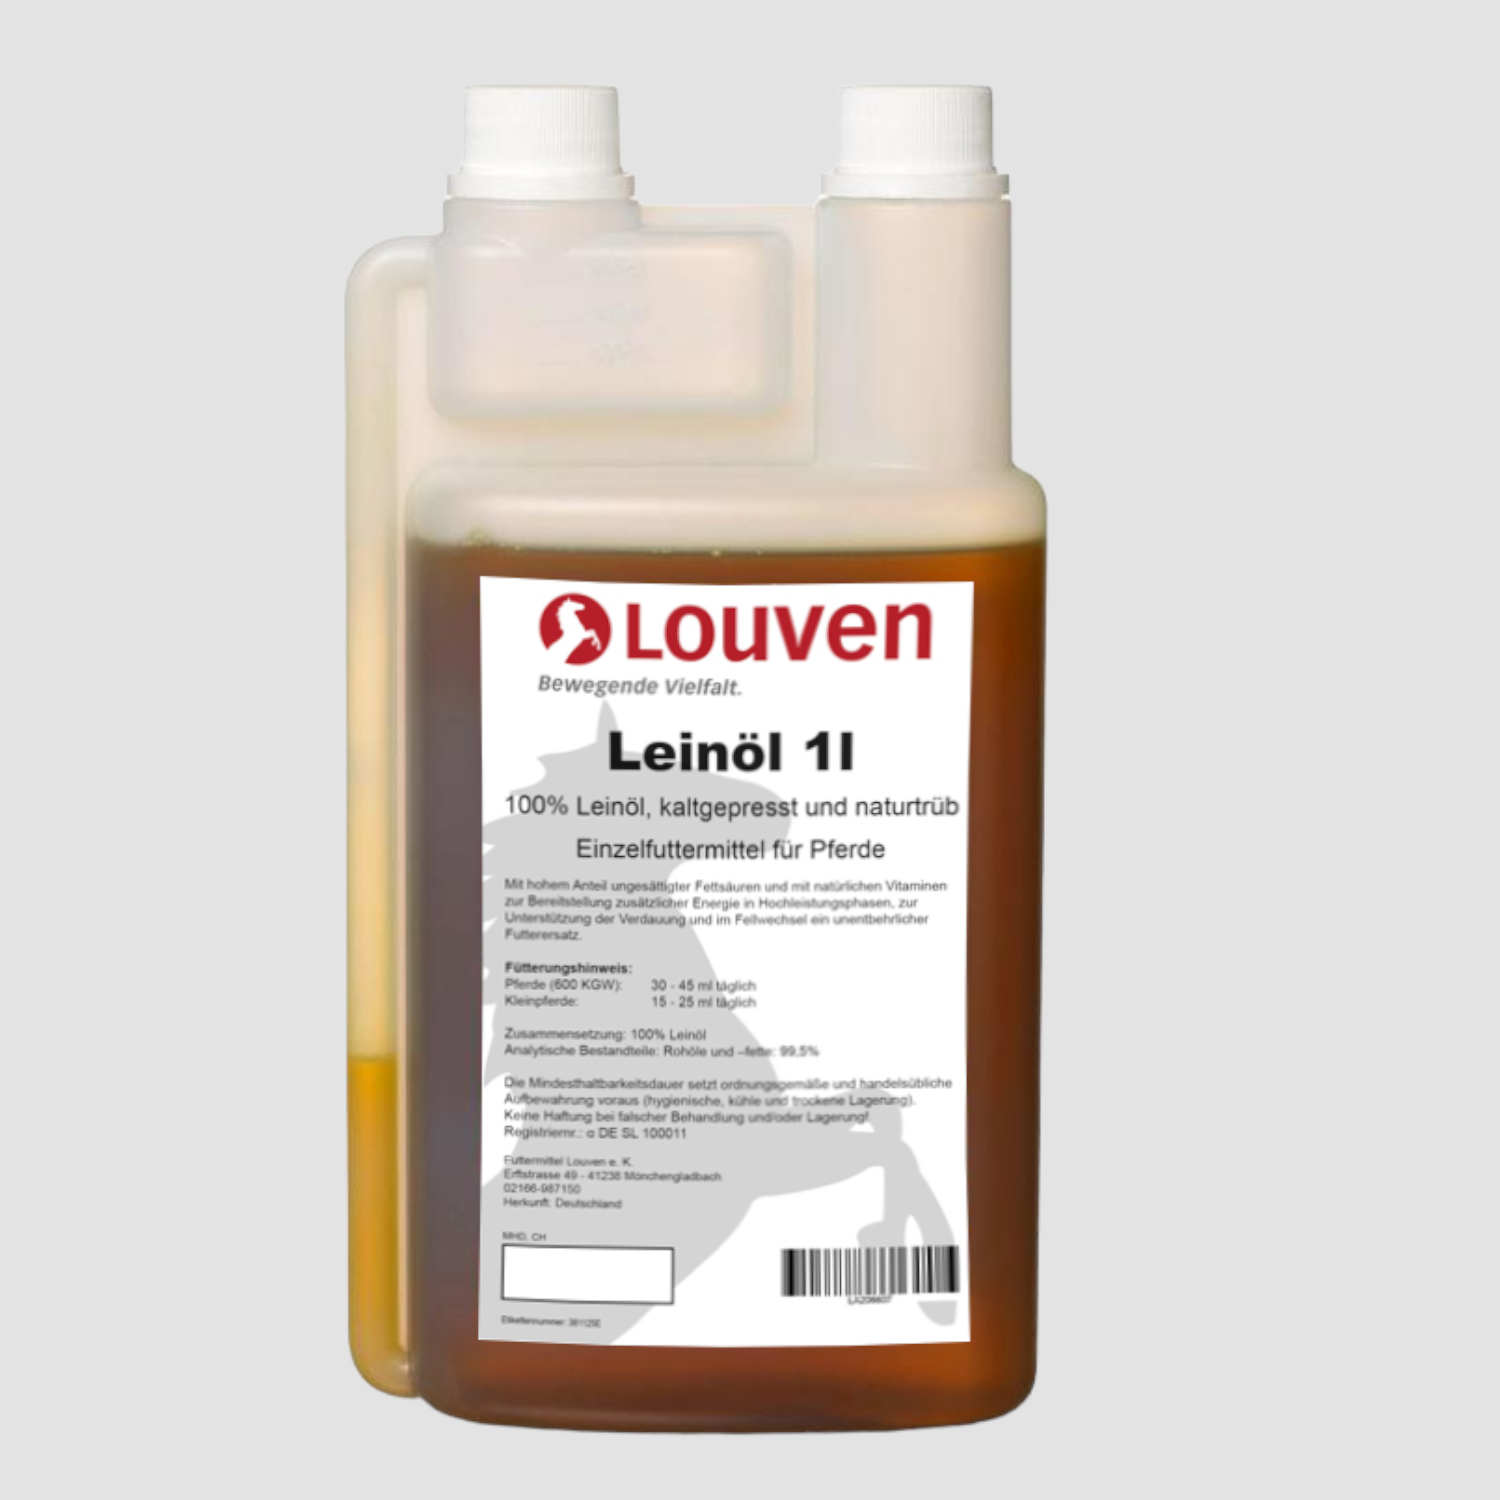 Louven Leinöl- Pflanzenöl 1 Liter